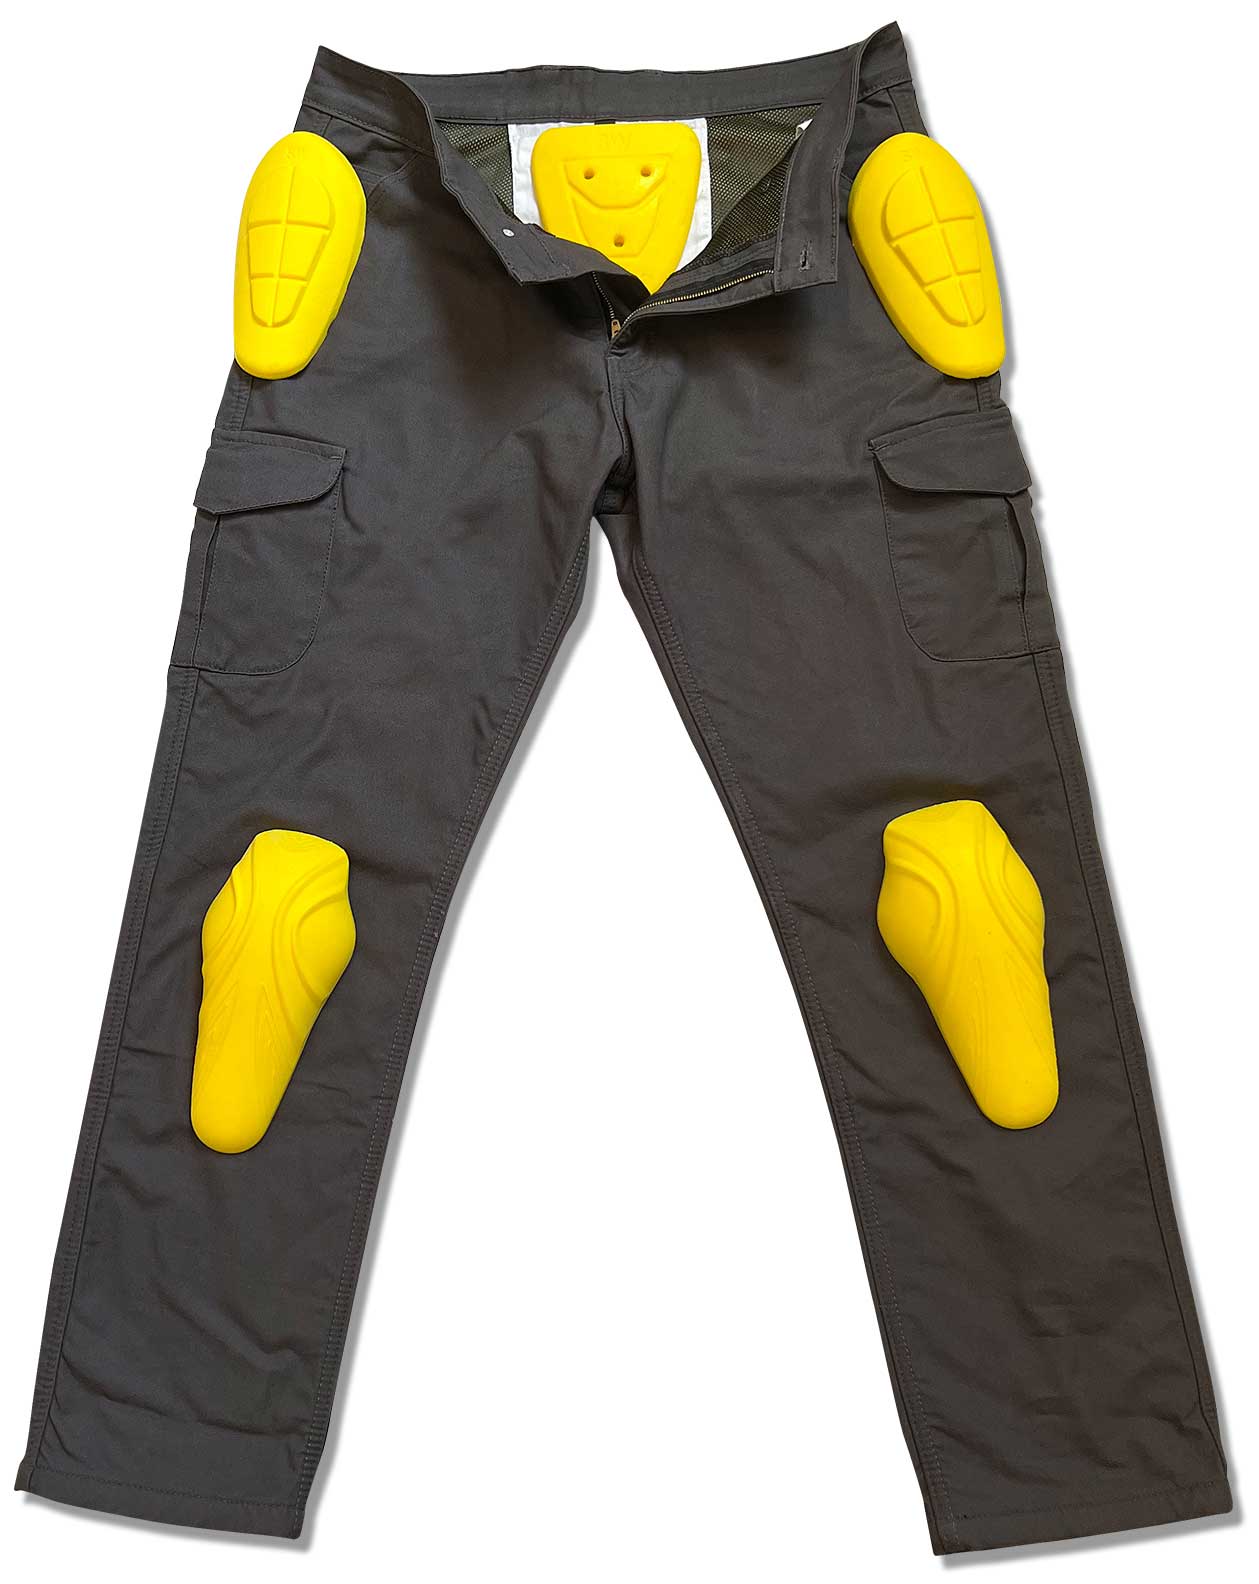 Pantalon moto de kevlar tallas grandes elasticos homologaciones NIVEL 2.Outl